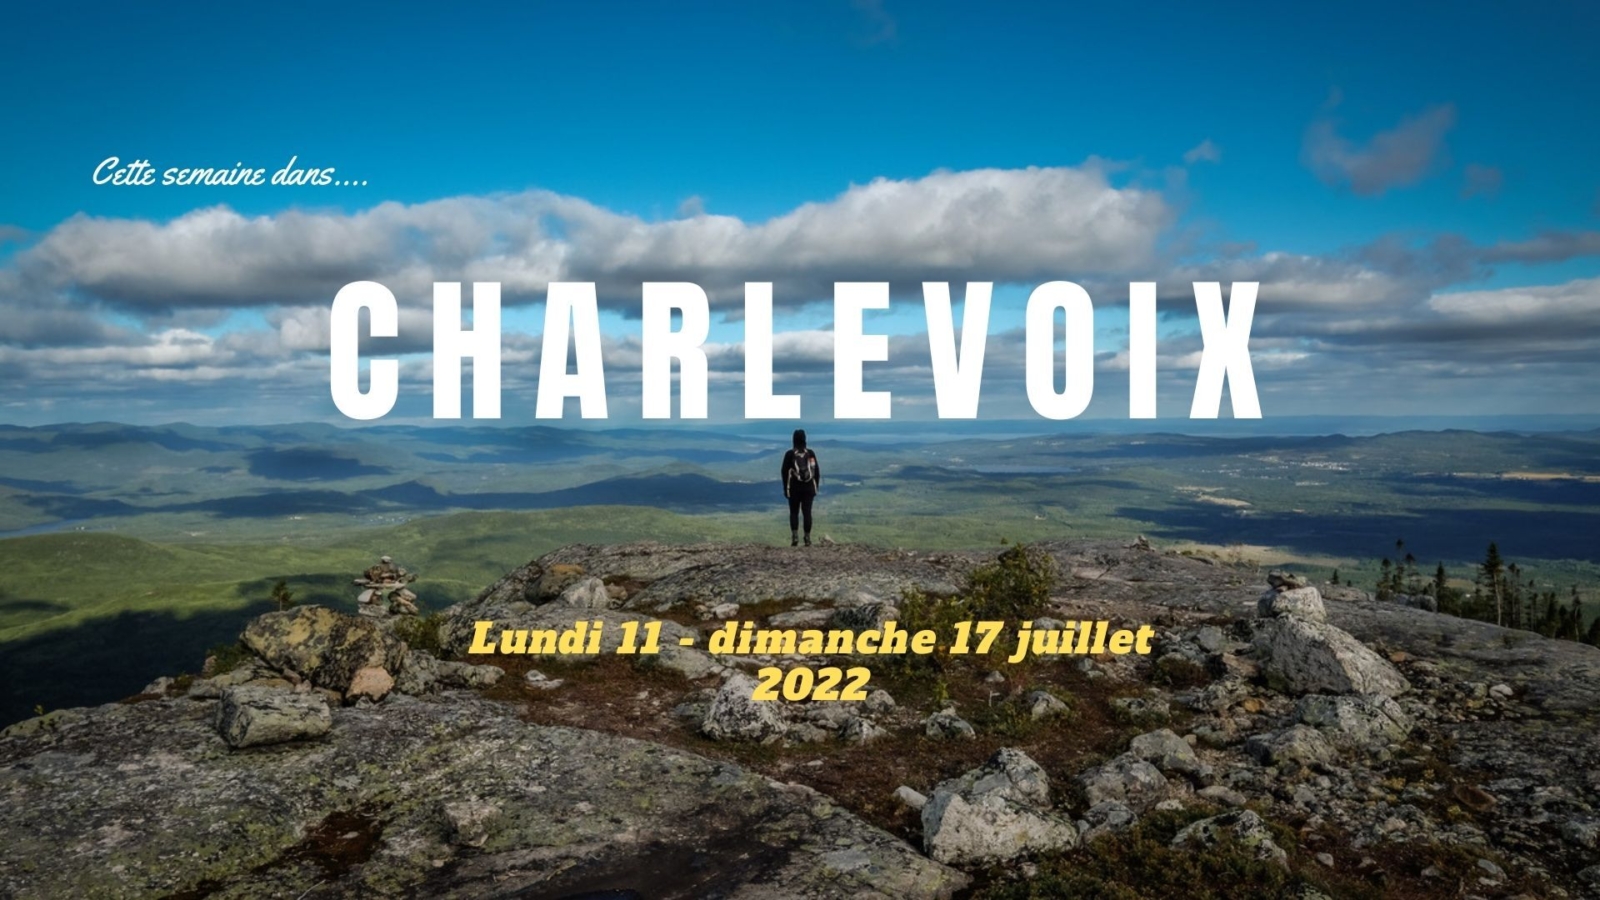 Cette semaine dans Charlevoix: Lundi 11 - dimanche 17 Juillet 2022